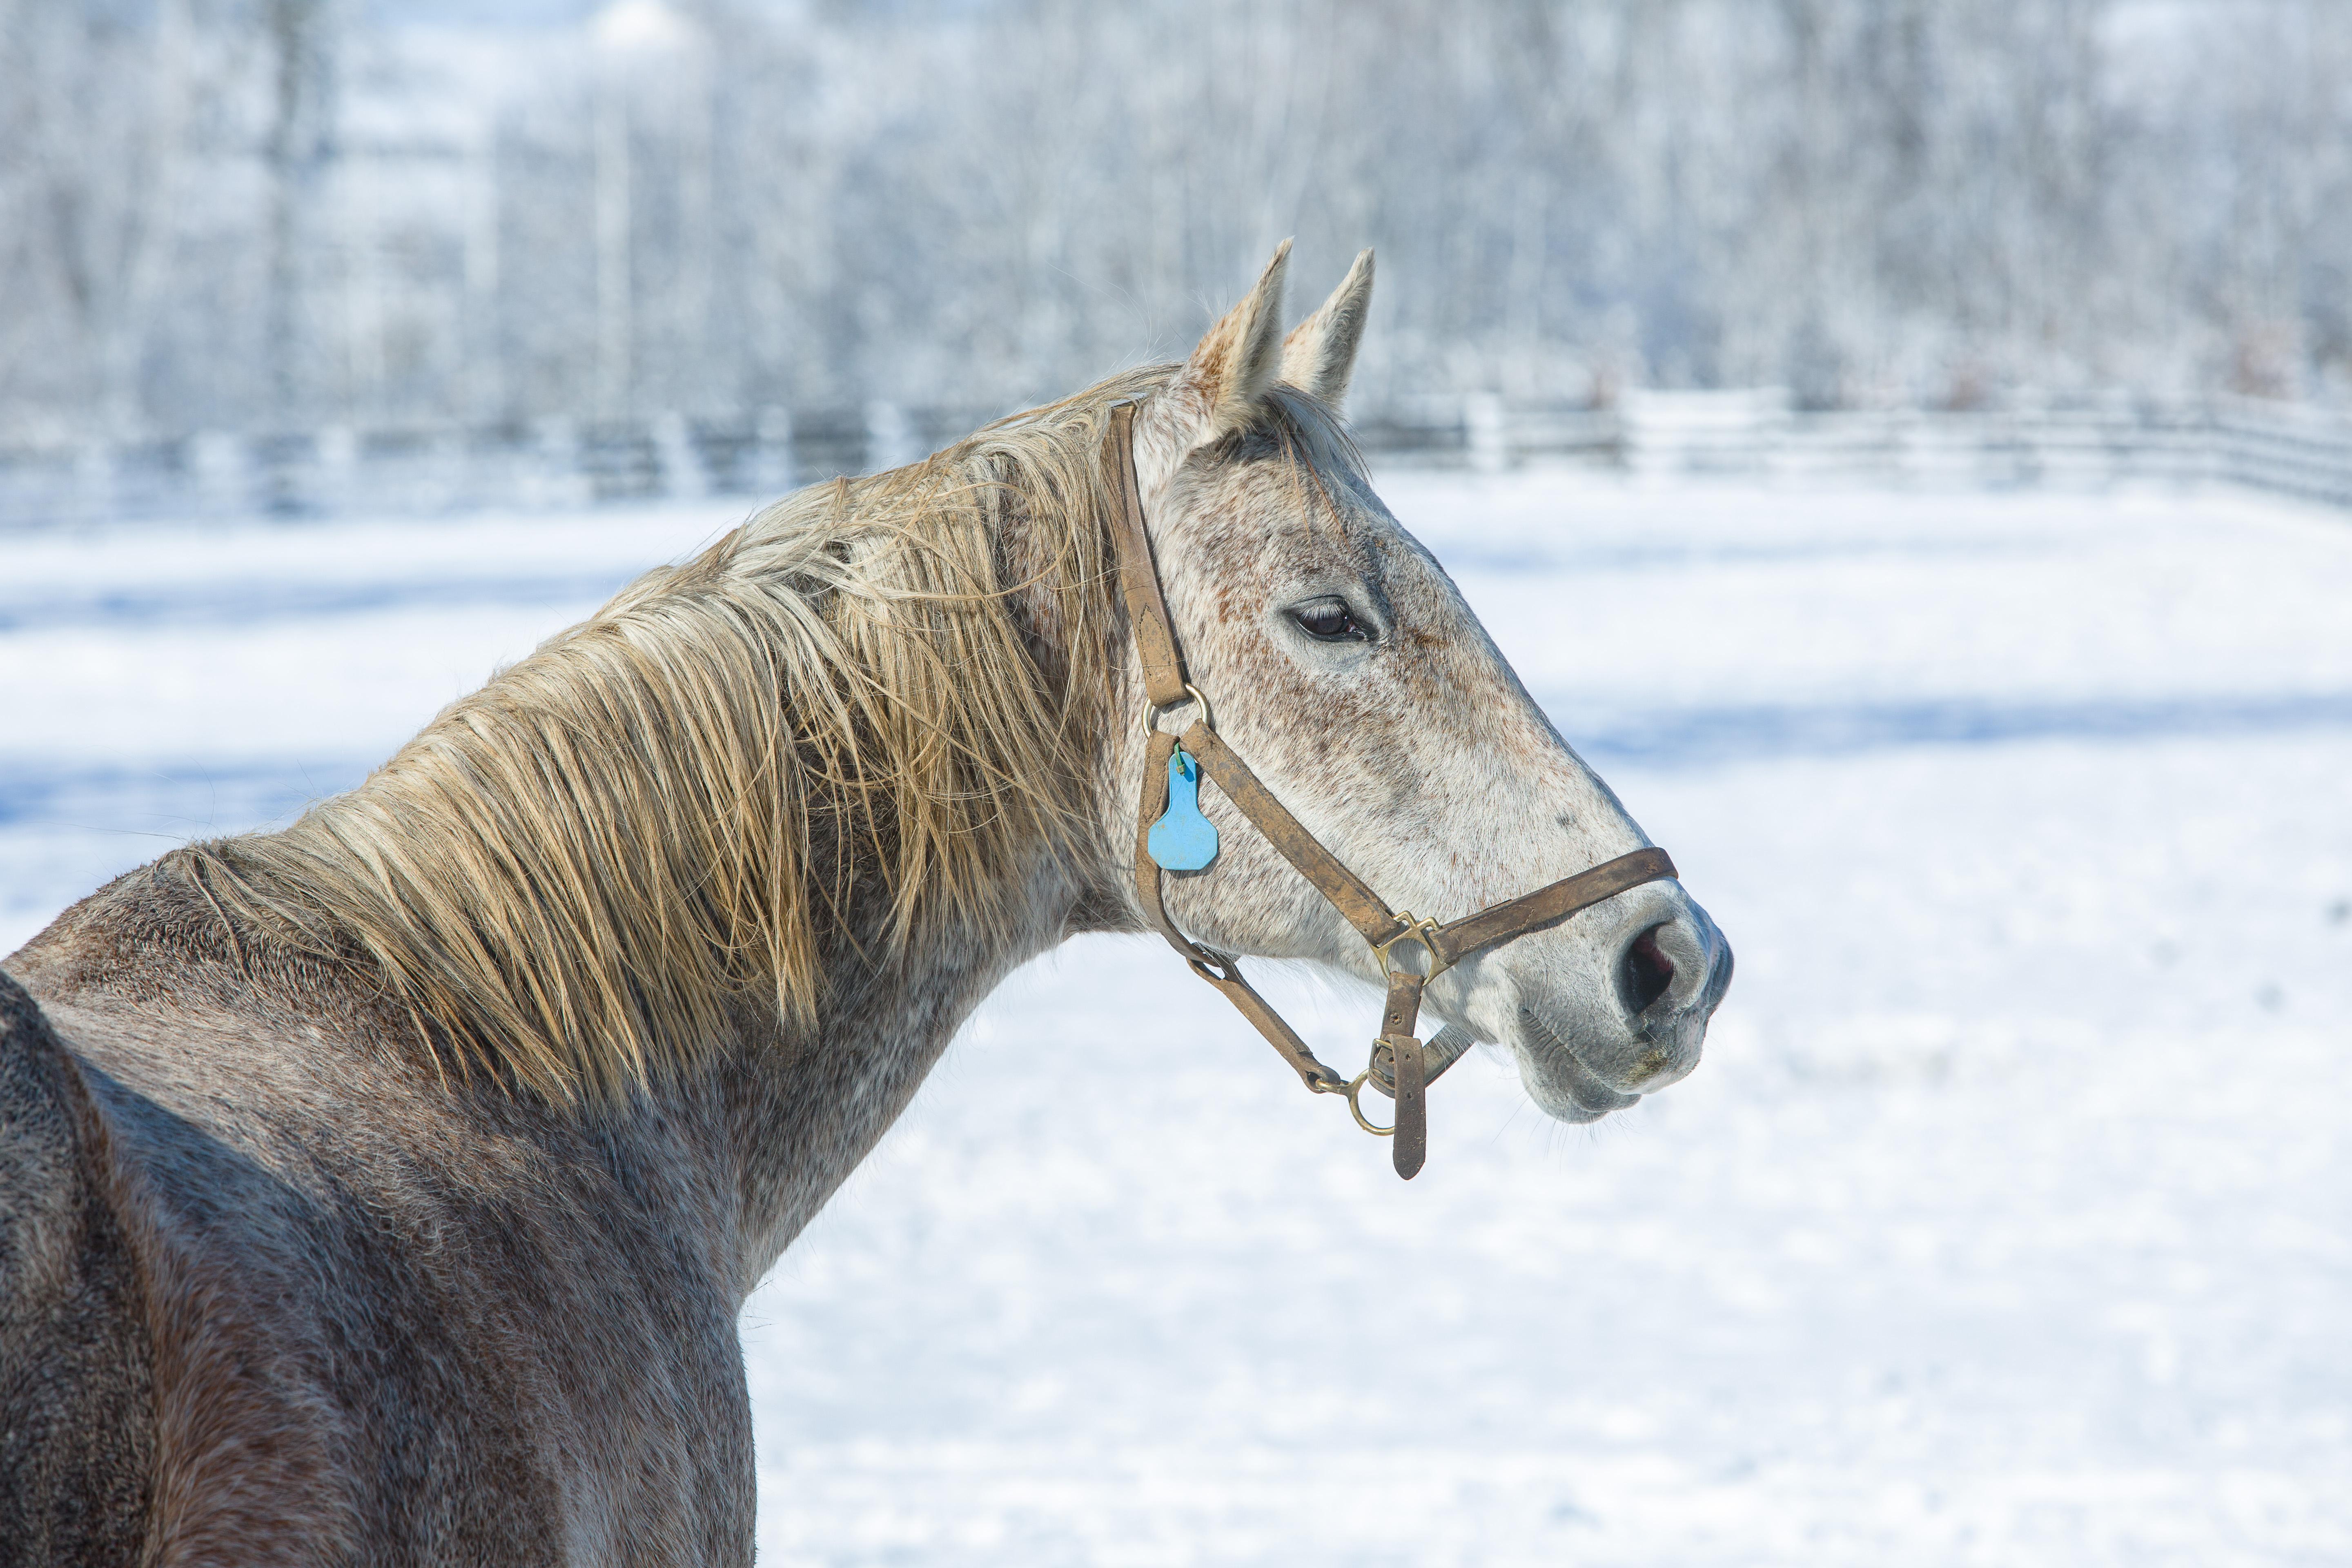 Horse in a snowy field